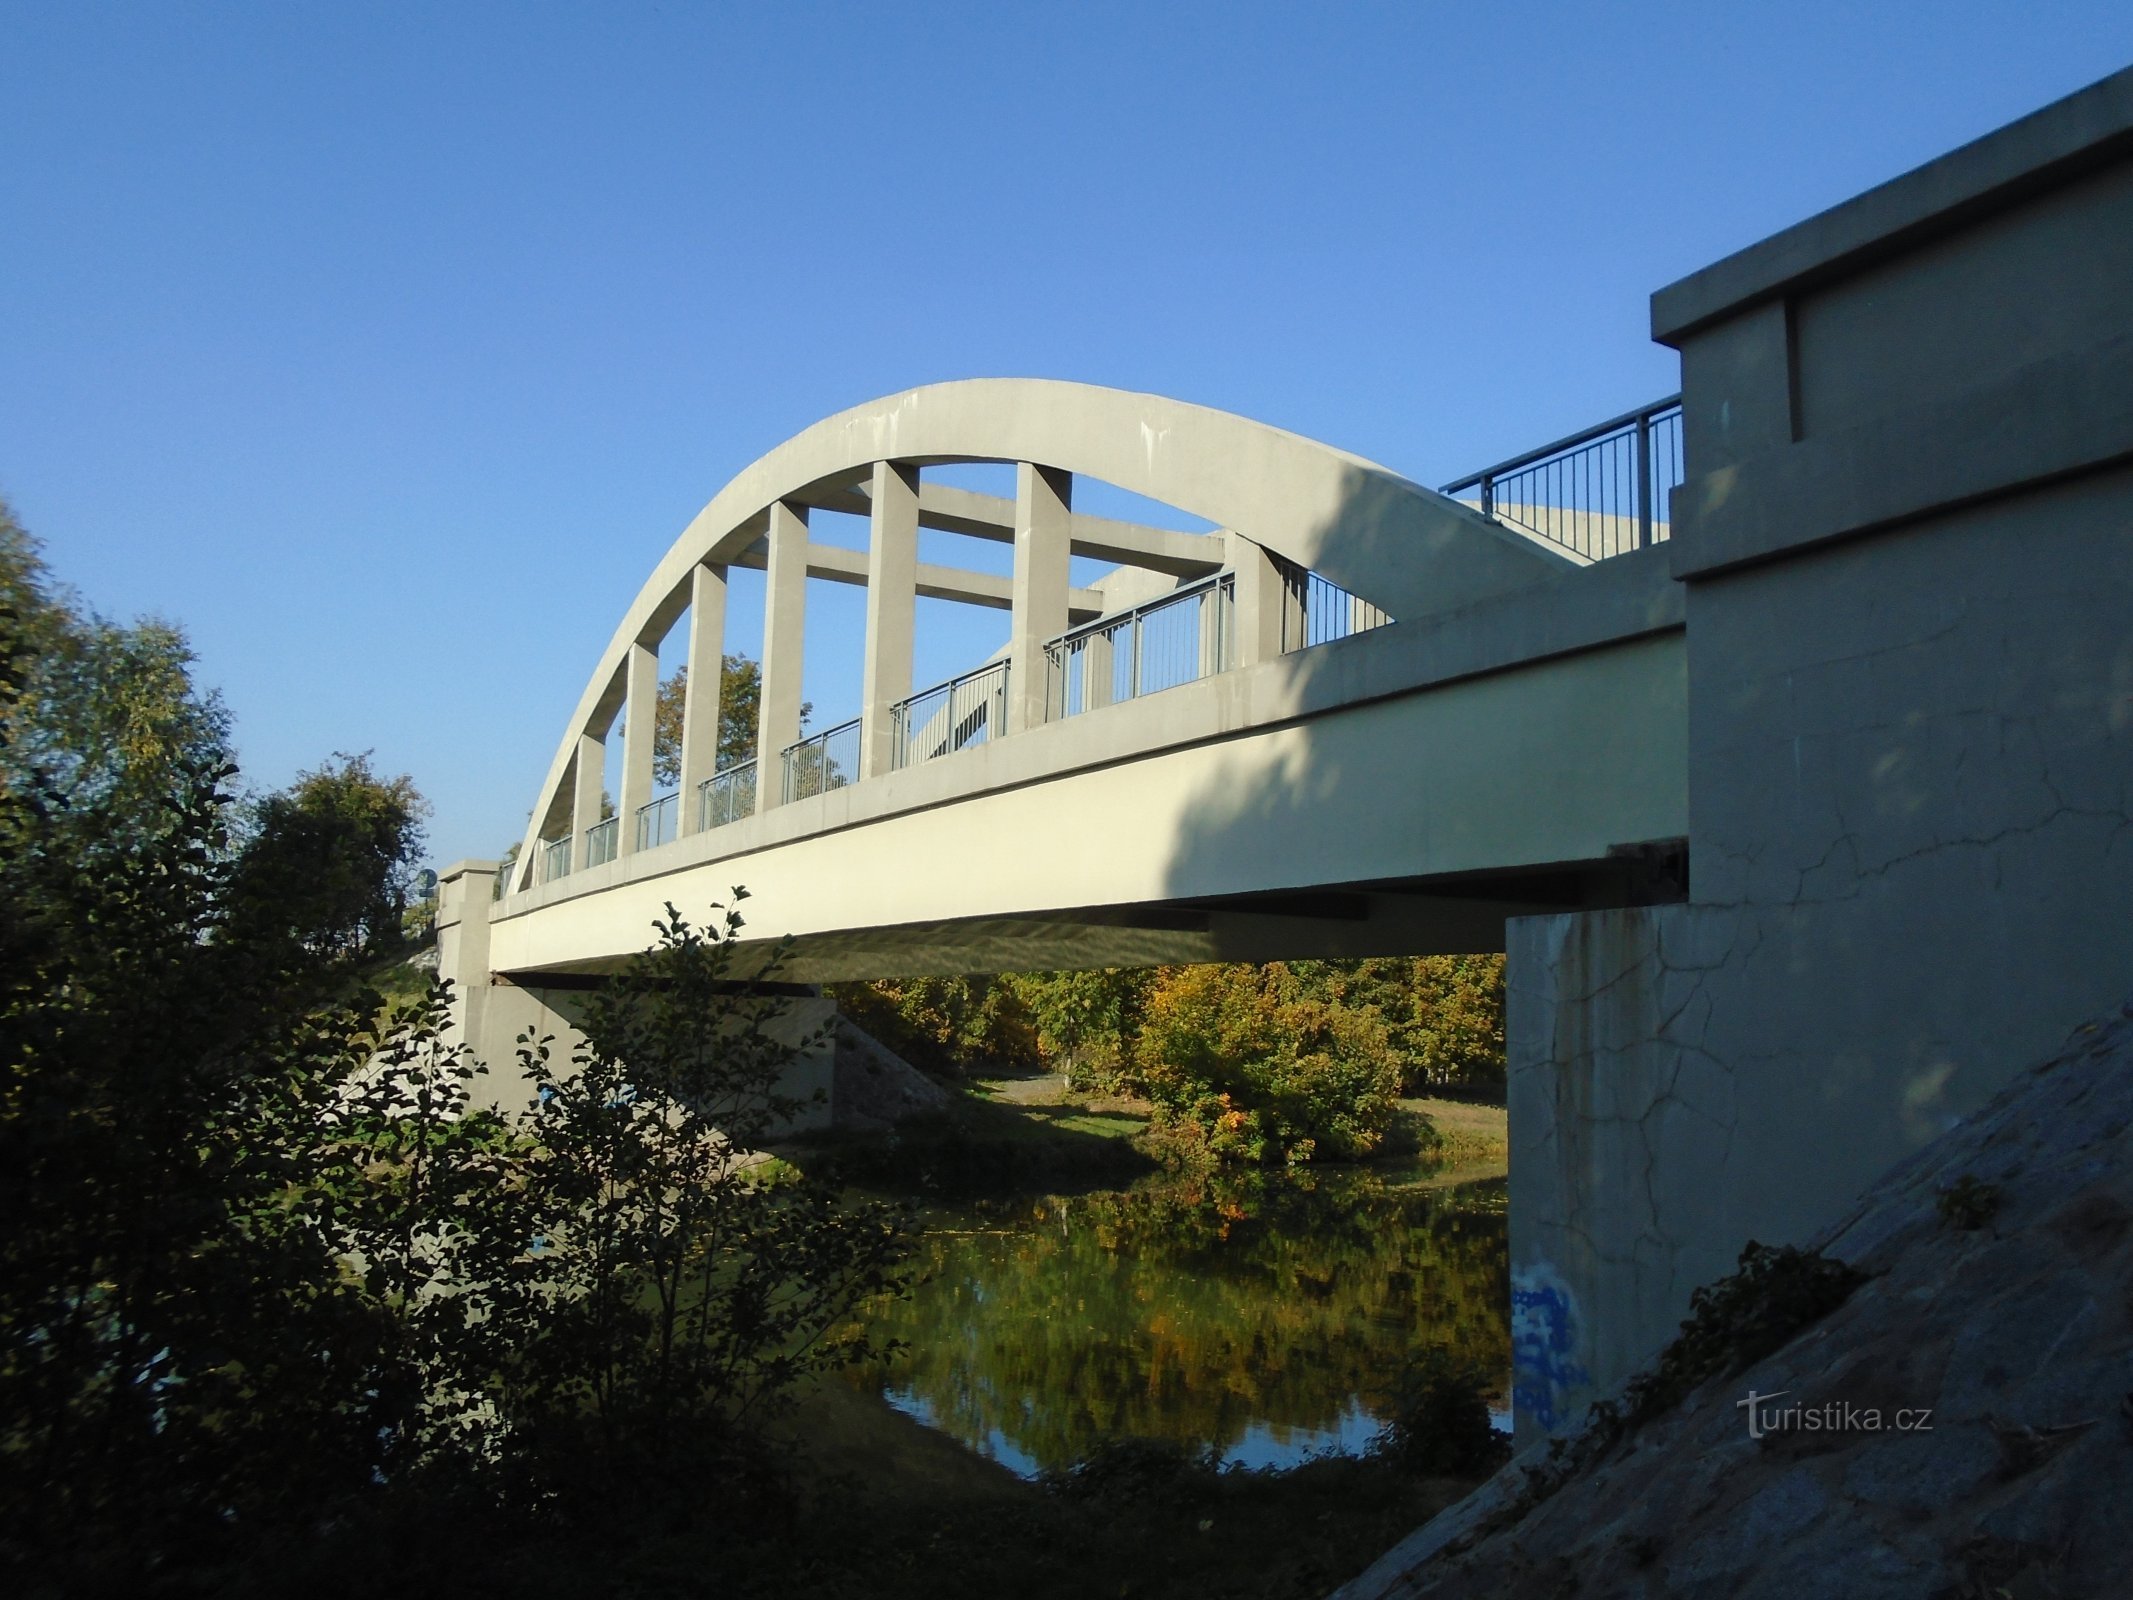 Ponte sull'Elba (Černožice, 10.10.2018)